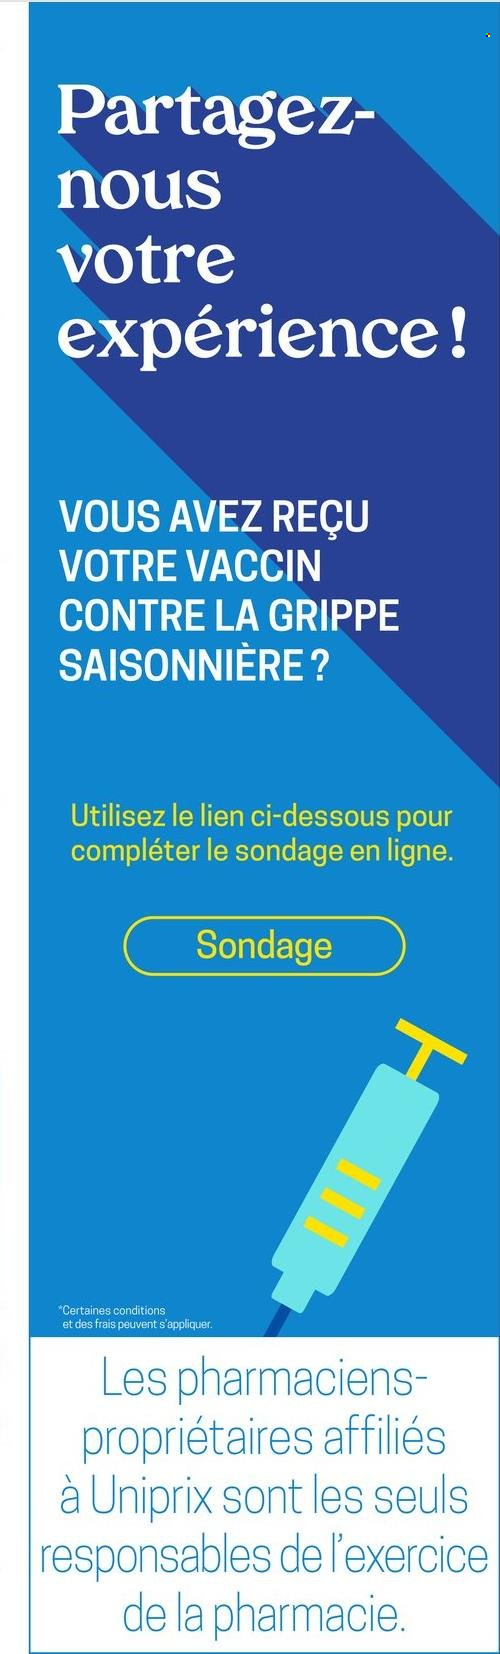 Uniprix Santé flyer  - November 25, 2021 - December 01, 2021.